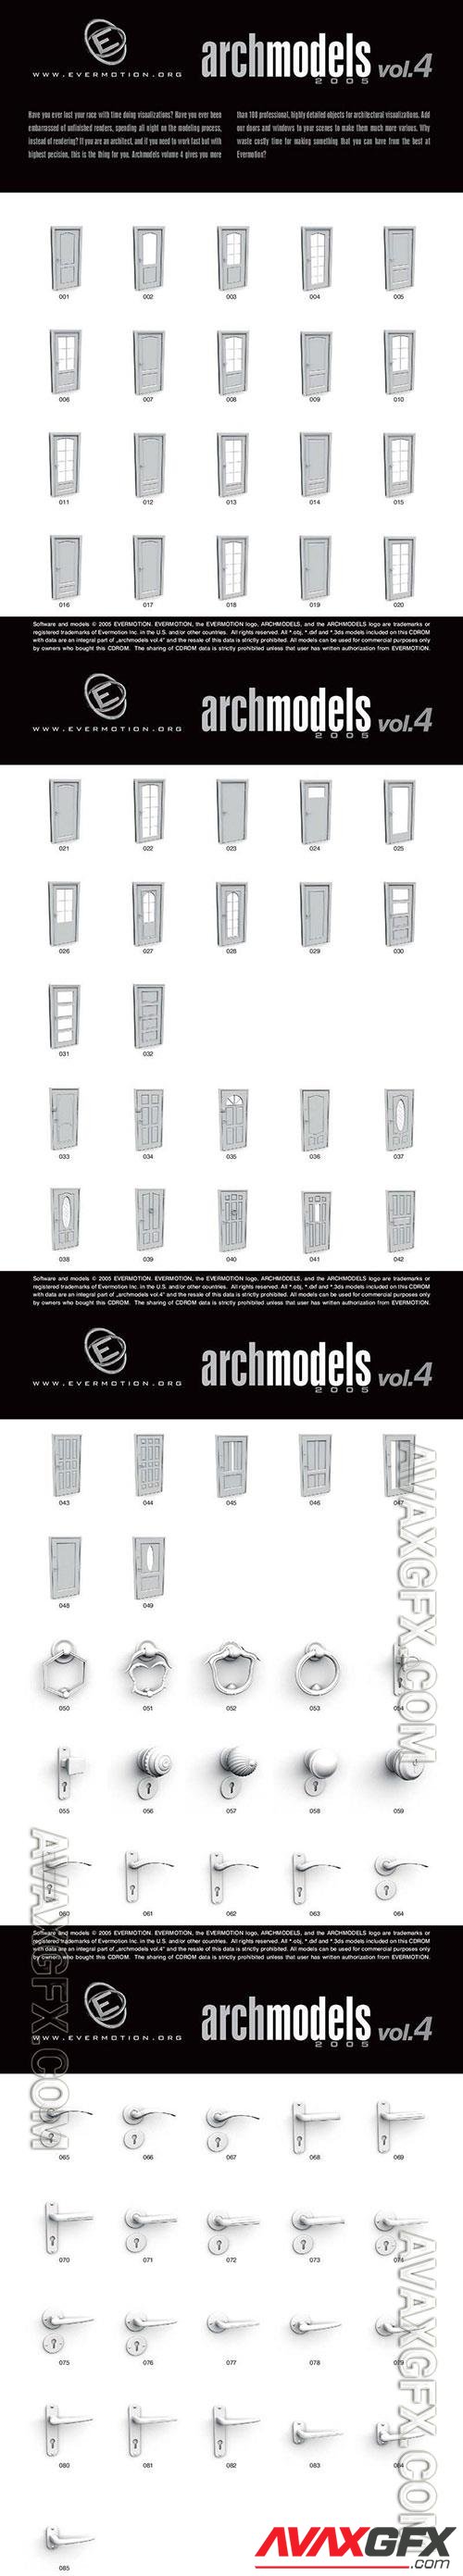 3D Models Evermotion Archmodels v 004